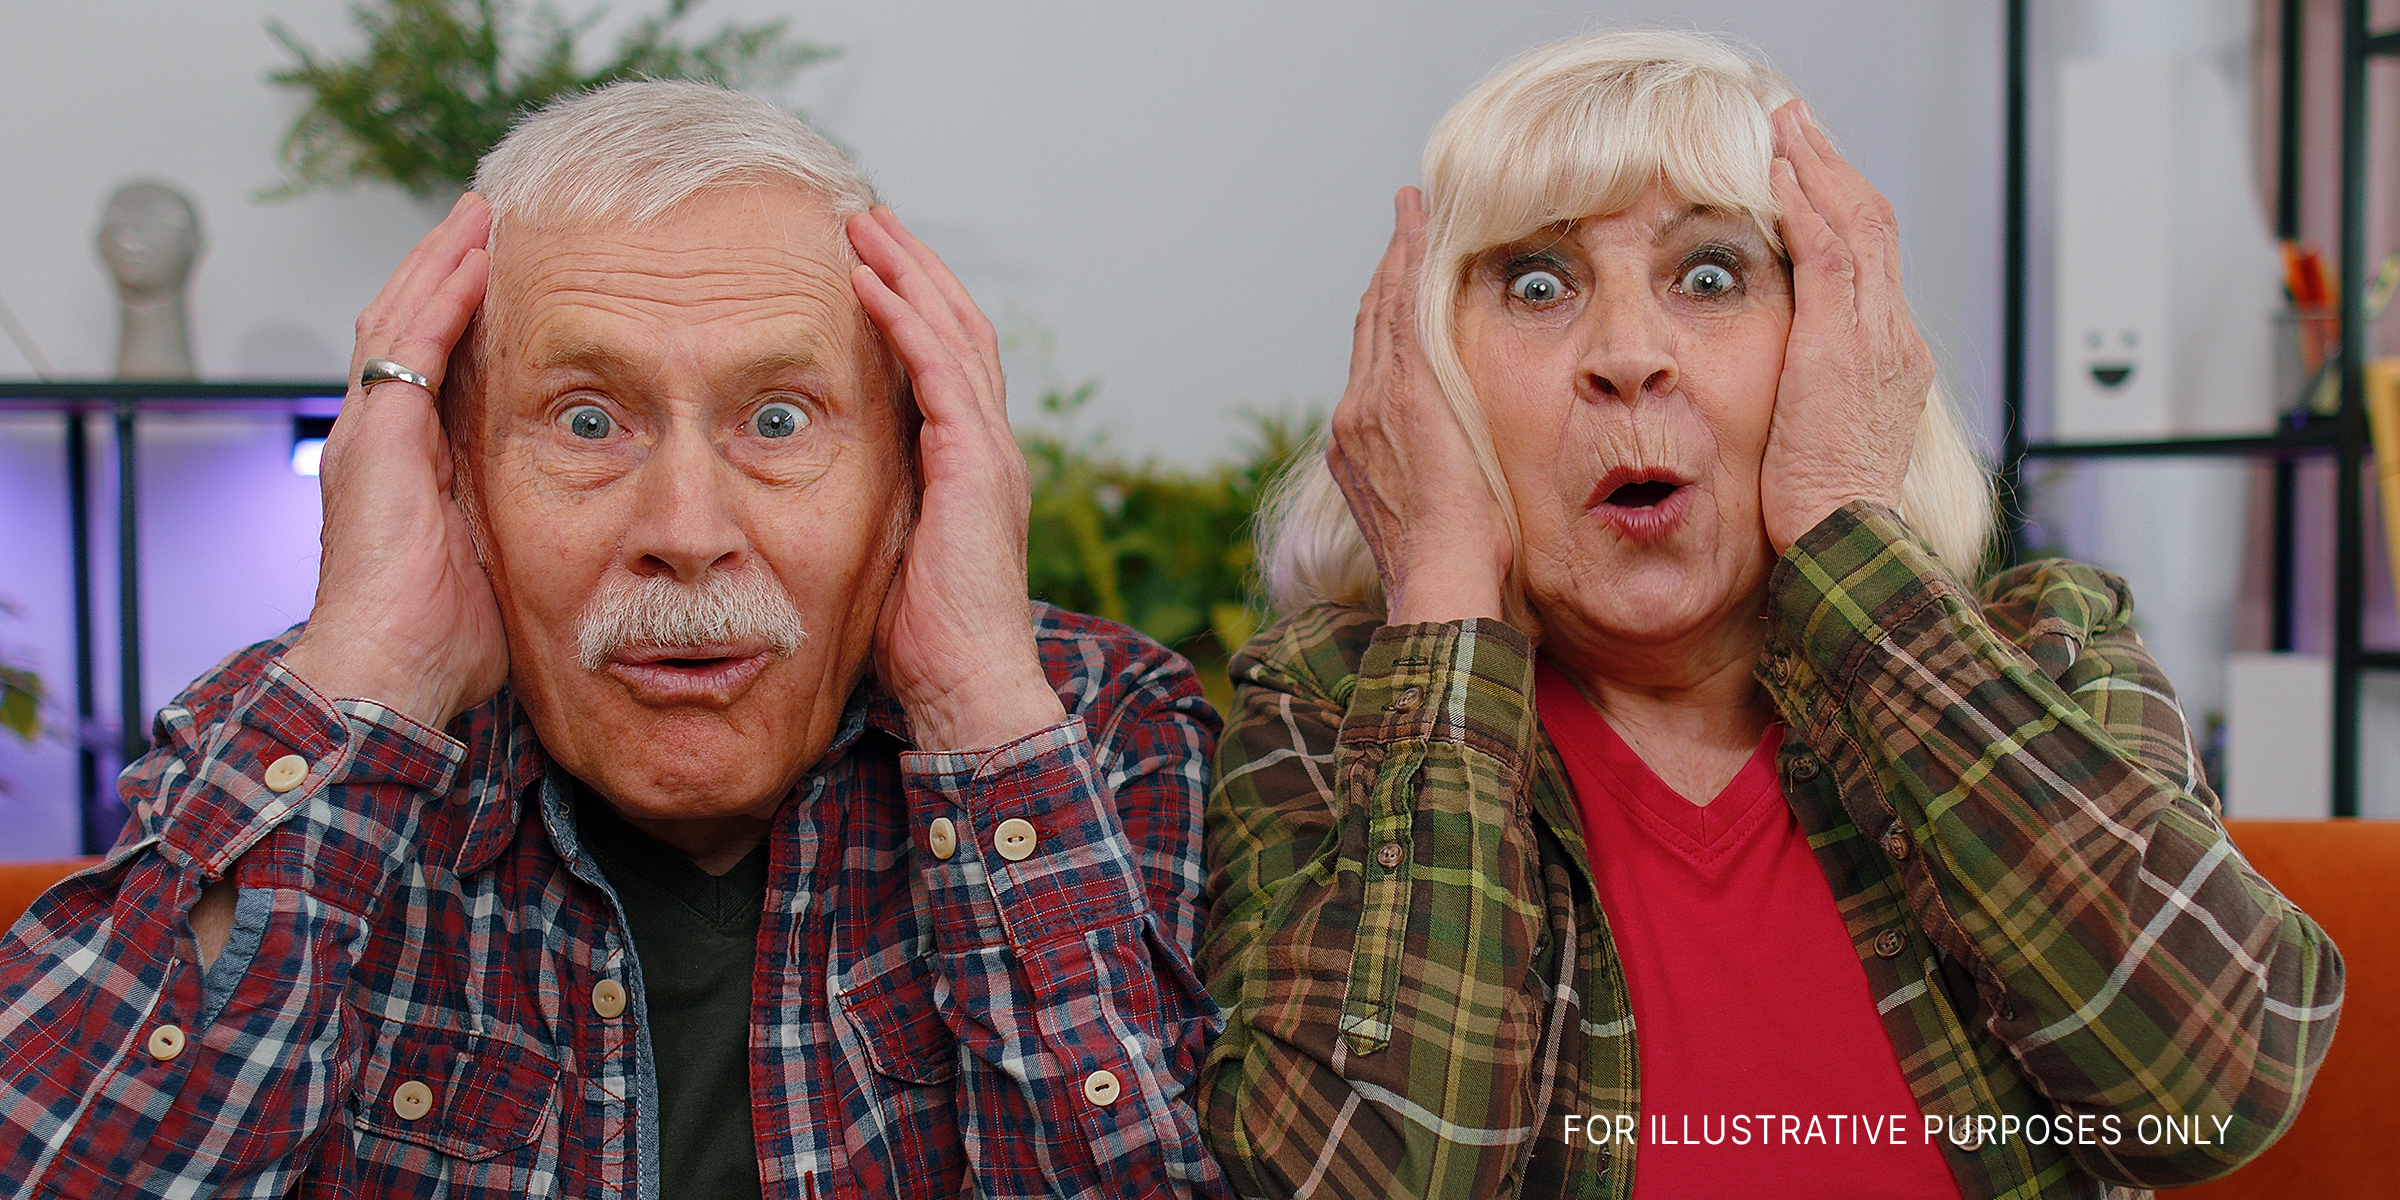 A shocked elderly couple | Source: Shutterstock